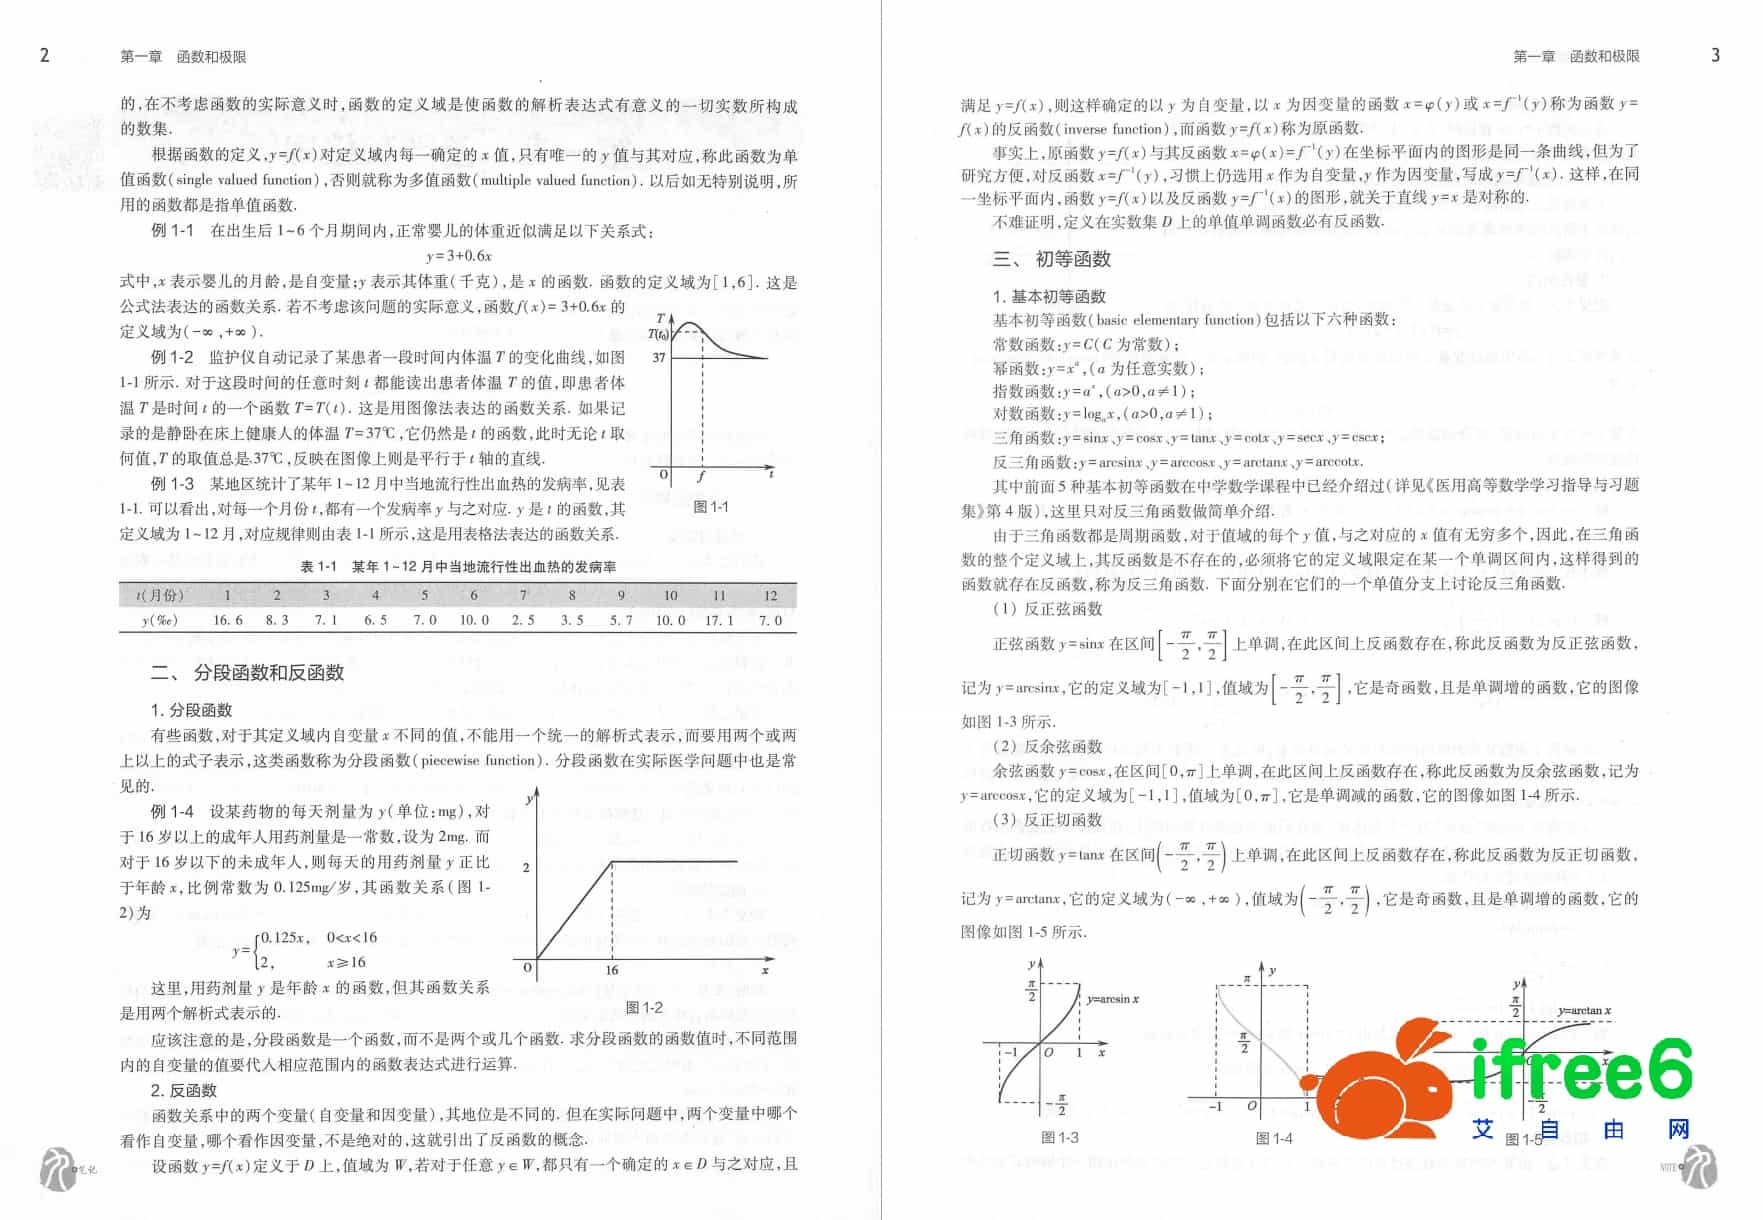 《医用高等数学》第7版_秦侠,吕丹主编pdf | 艾自由网